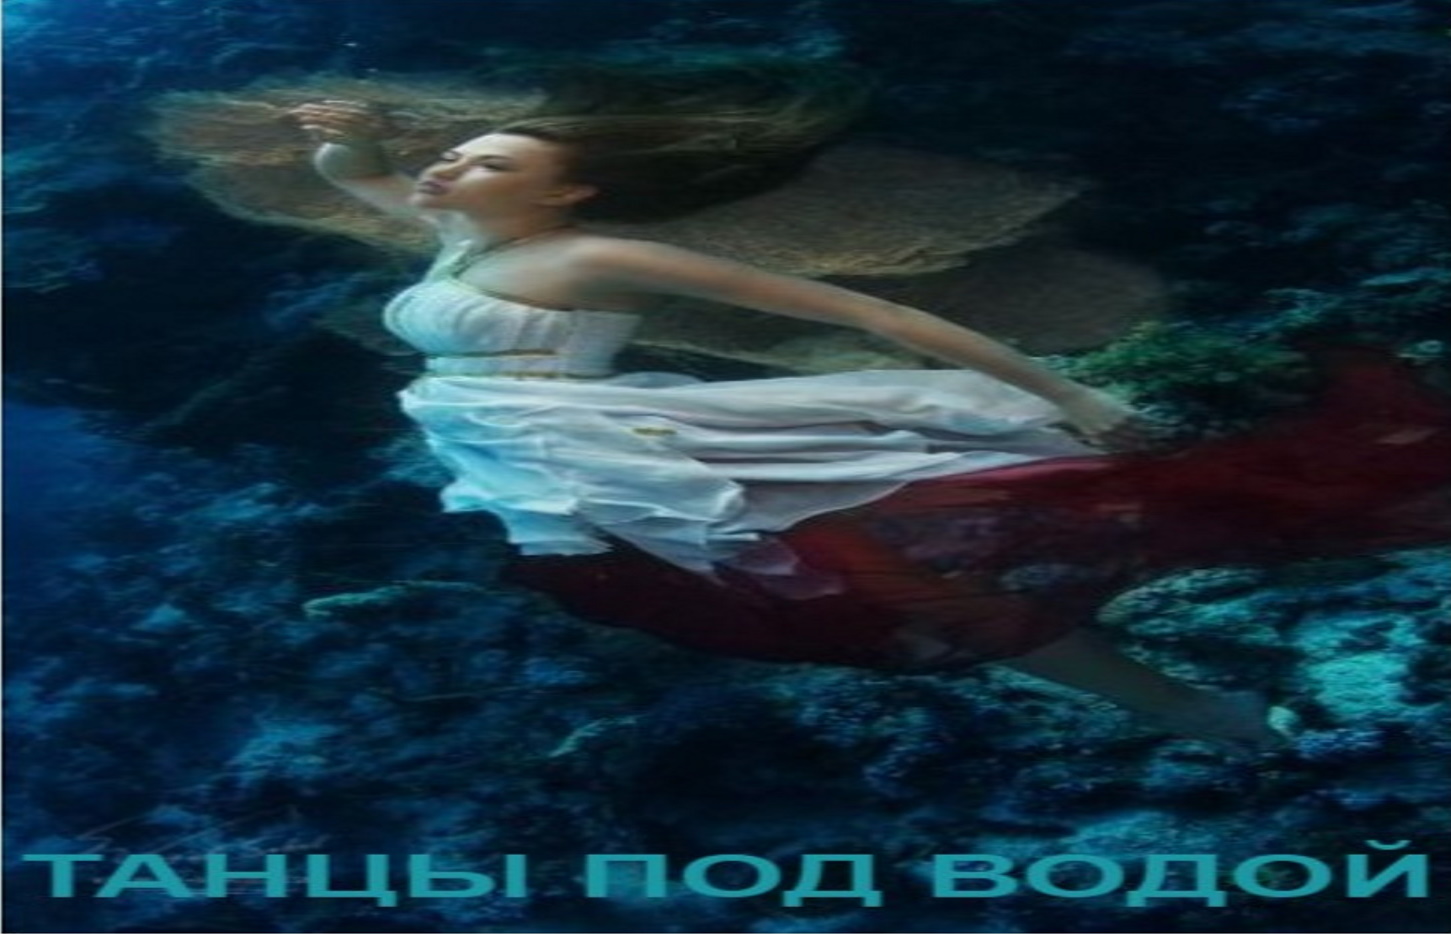 Песнь на воде на русском. Человек смотрящий в море. Танец под водой видео корабль. Титаник люди в воде замерзшие. Под водой песня пропаганда.